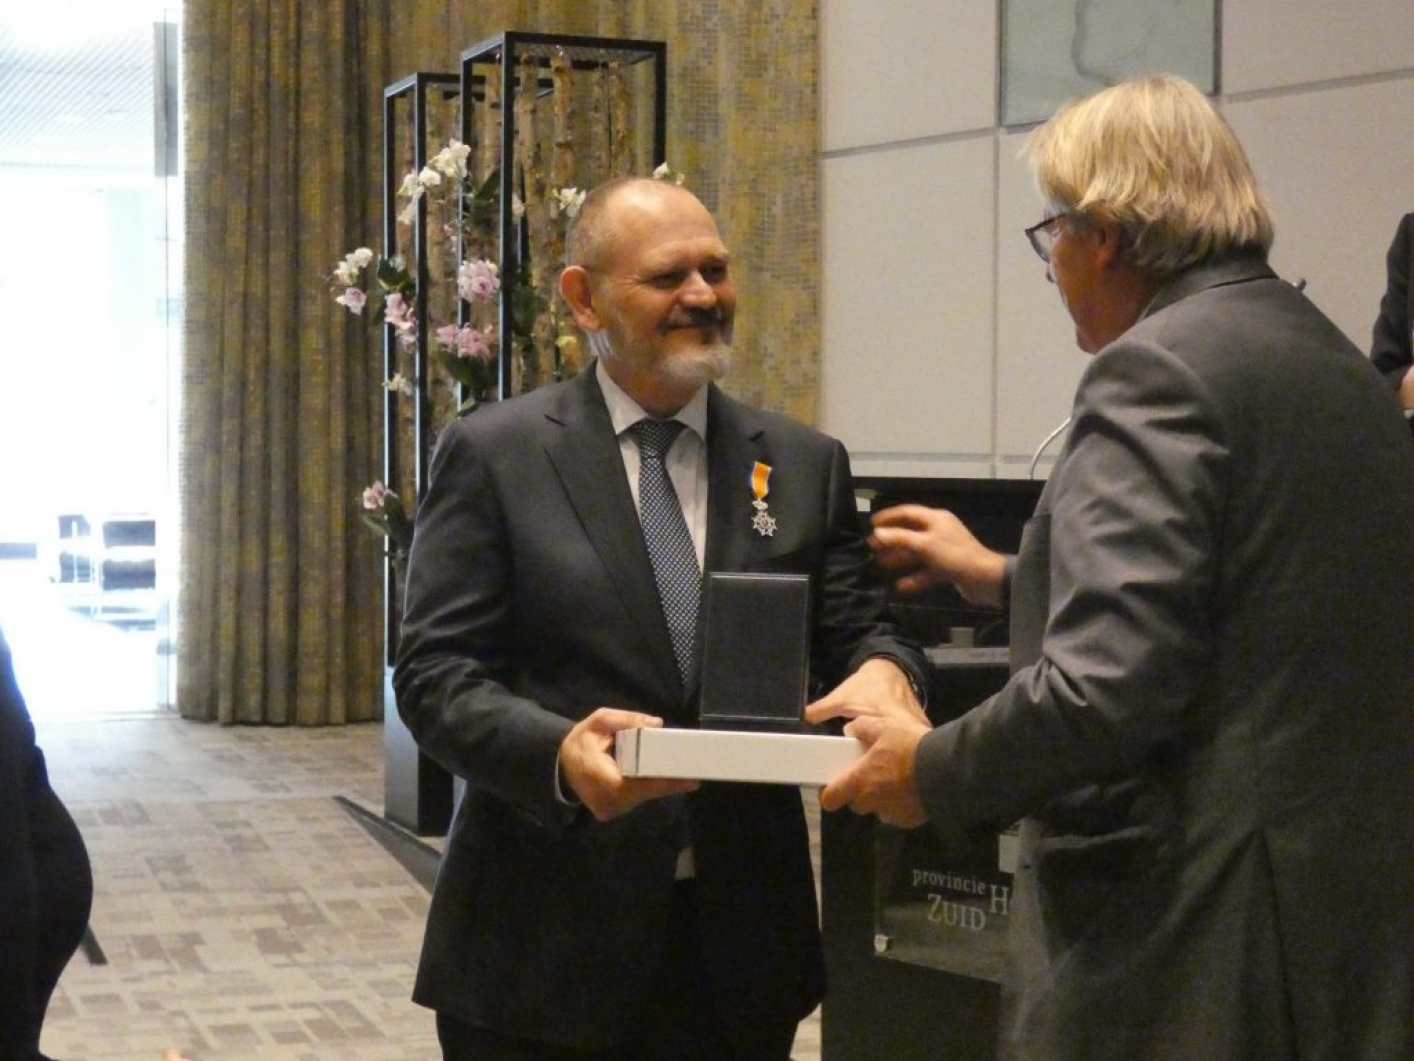 Ron Hillebrand ontvangt de koninklijke onderscheidng uit handen van de Commissaris van de Koning Jaap Smit